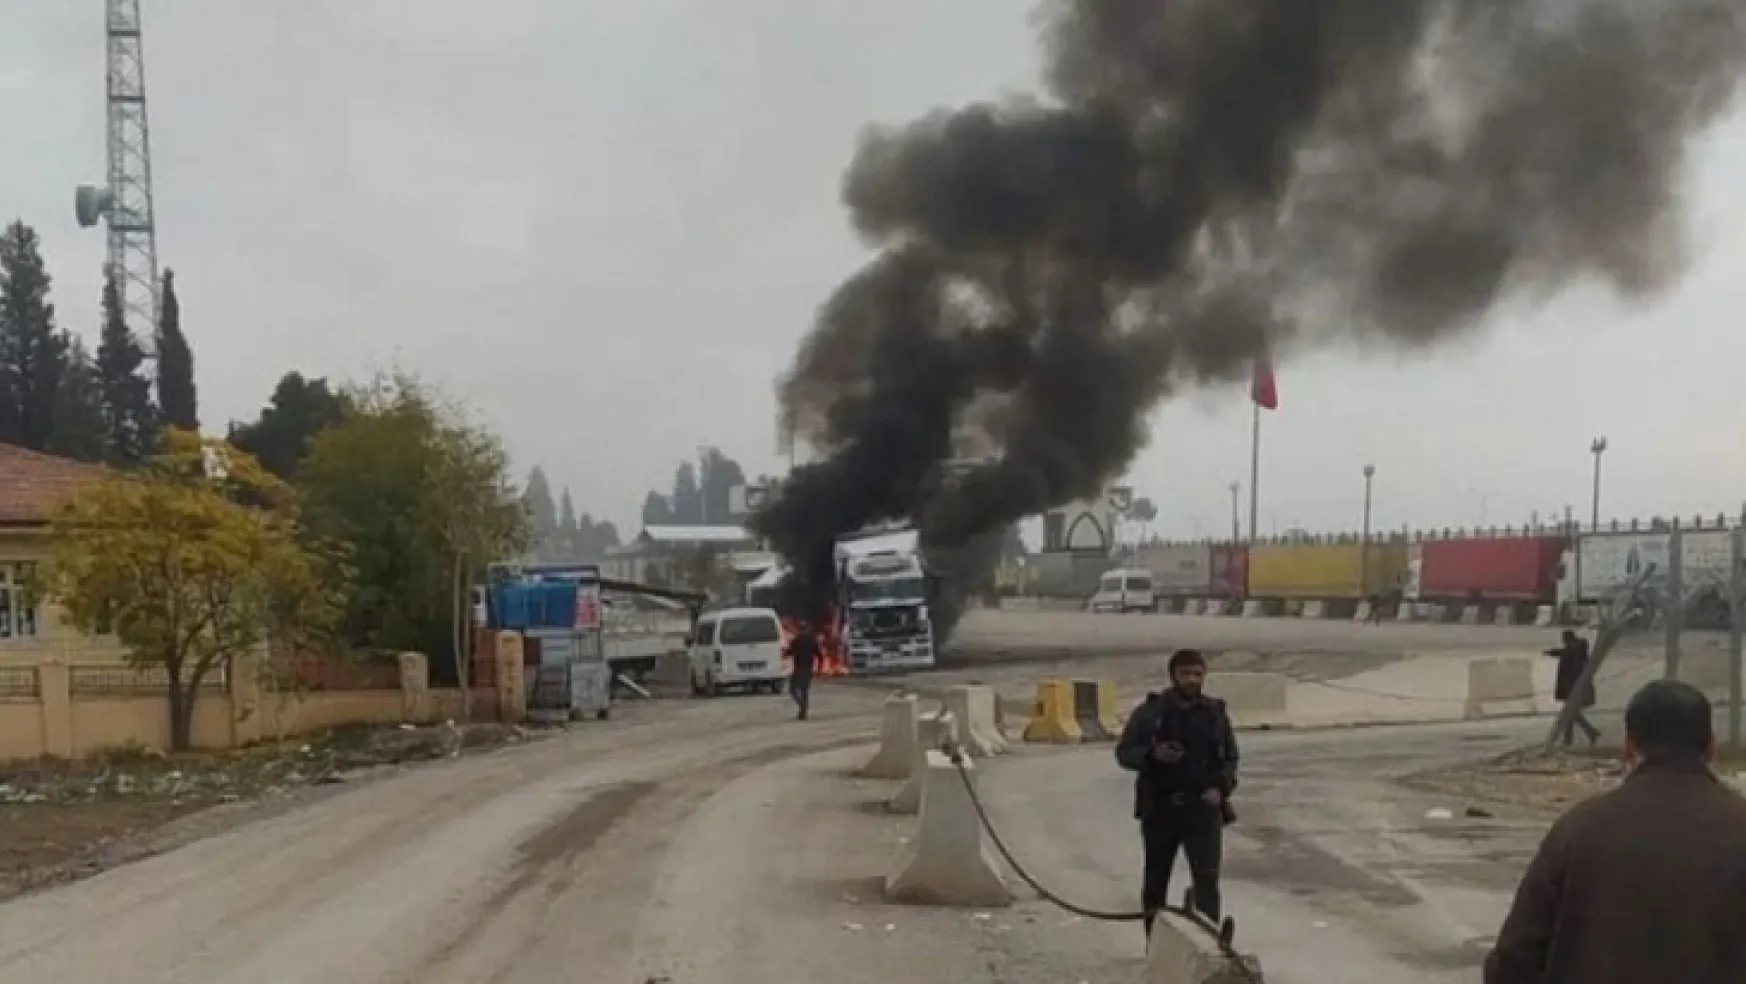 Gaziantep Karkamış'a havan saldırısı: 3 can kaybı